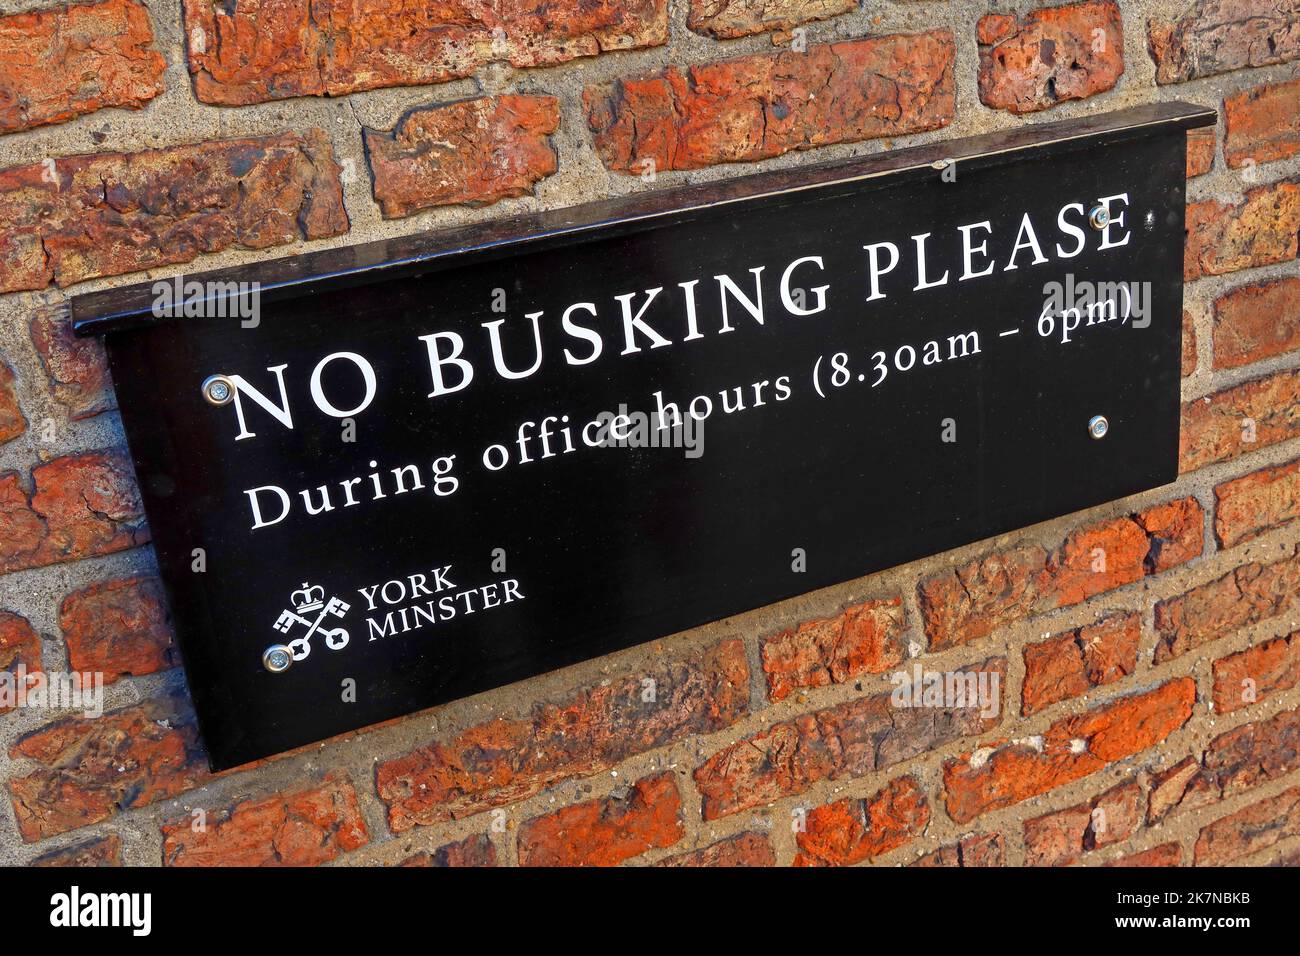 Pas de bus s'il vous plaît, pendant les heures de travail (8:30am - 6pm) panneau, près de York Minster, ville de York, Yorkshire, Angleterre, ROYAUME-UNI, YO1 6GD Banque D'Images